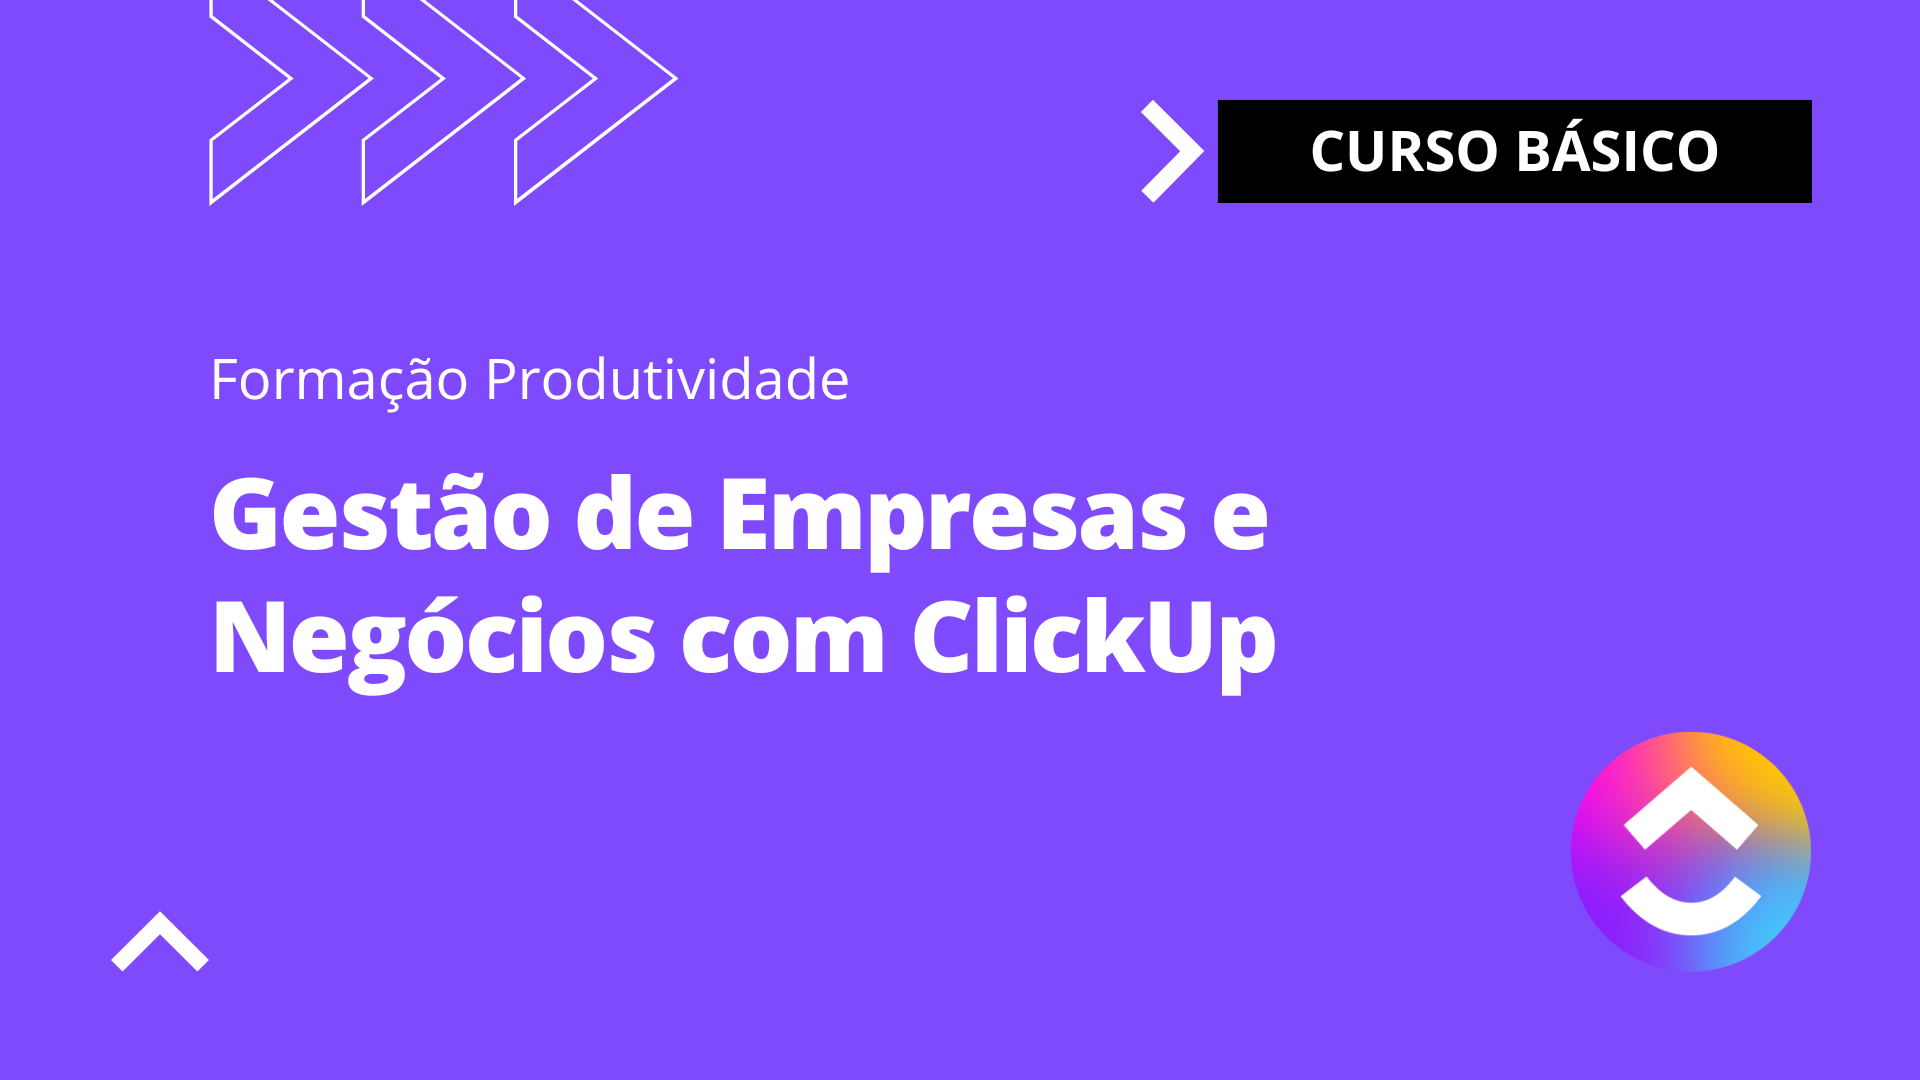 Gestão de Empresas e Negócios com ClickUp